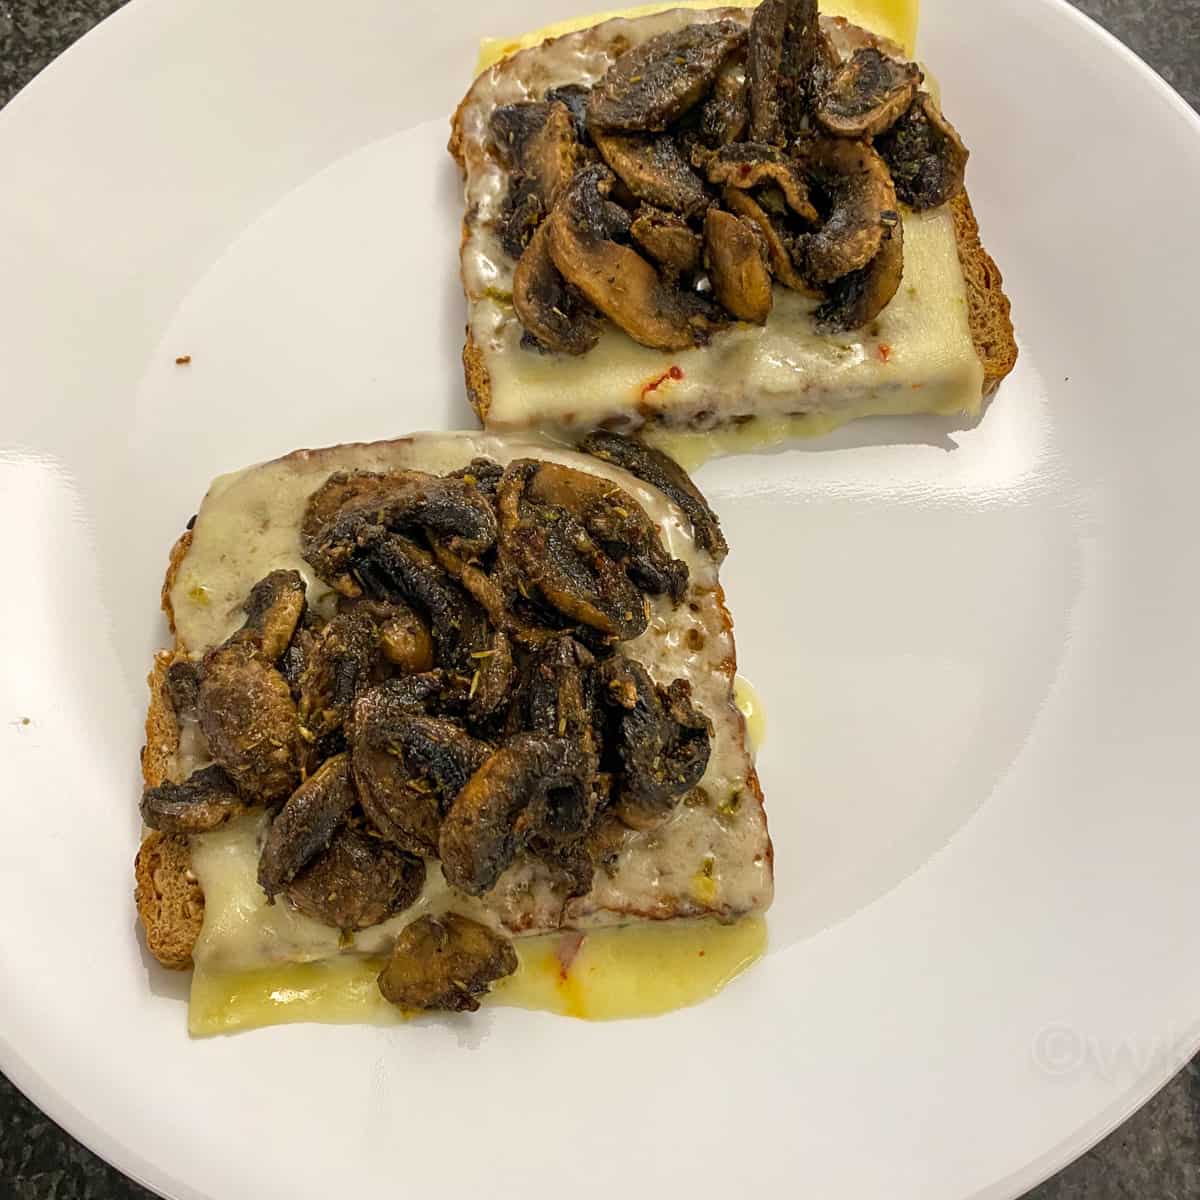 microwaved mushroom cheese toast